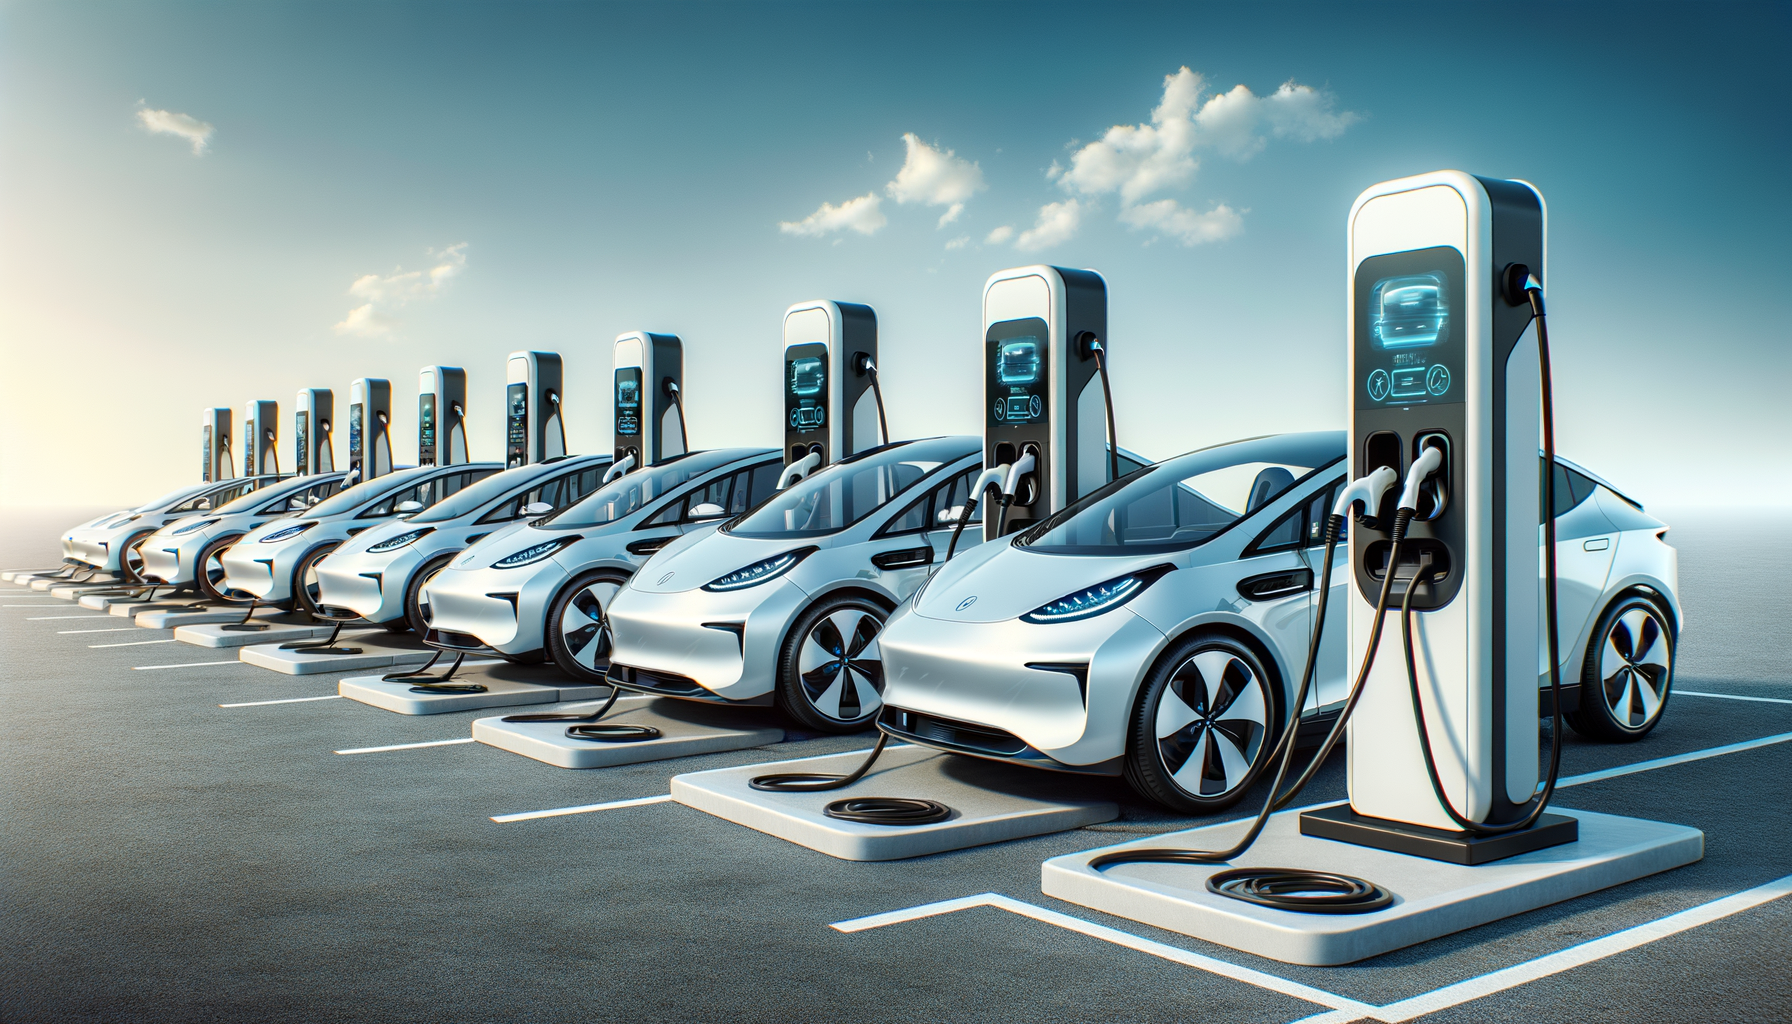 ALT: Tesla vehicles charging at a Supercharger station